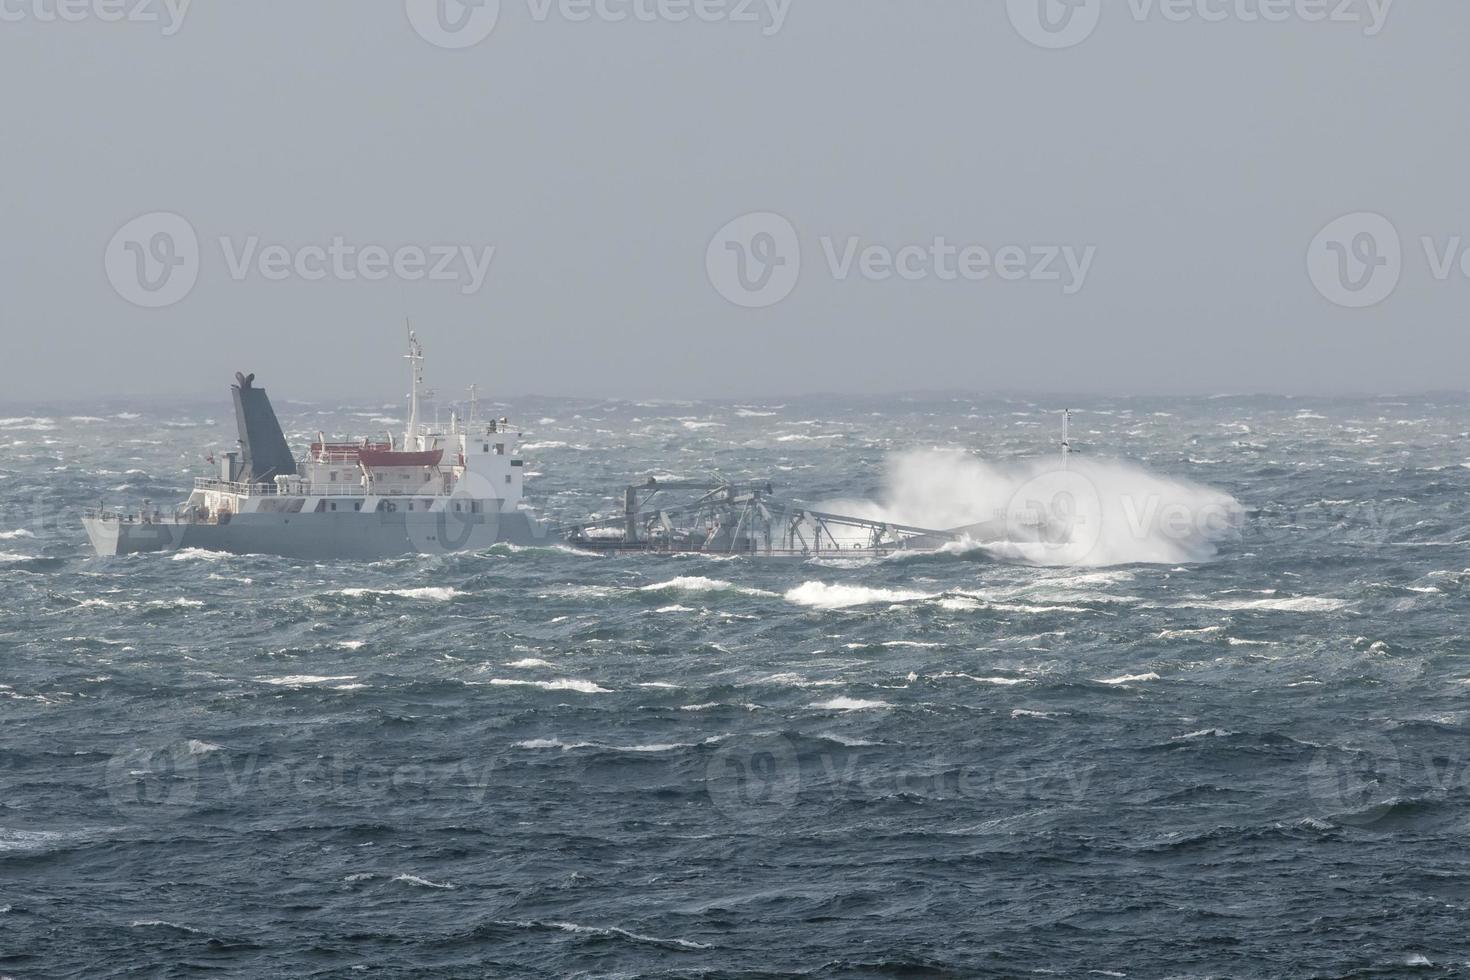 fartyg i de storm foto